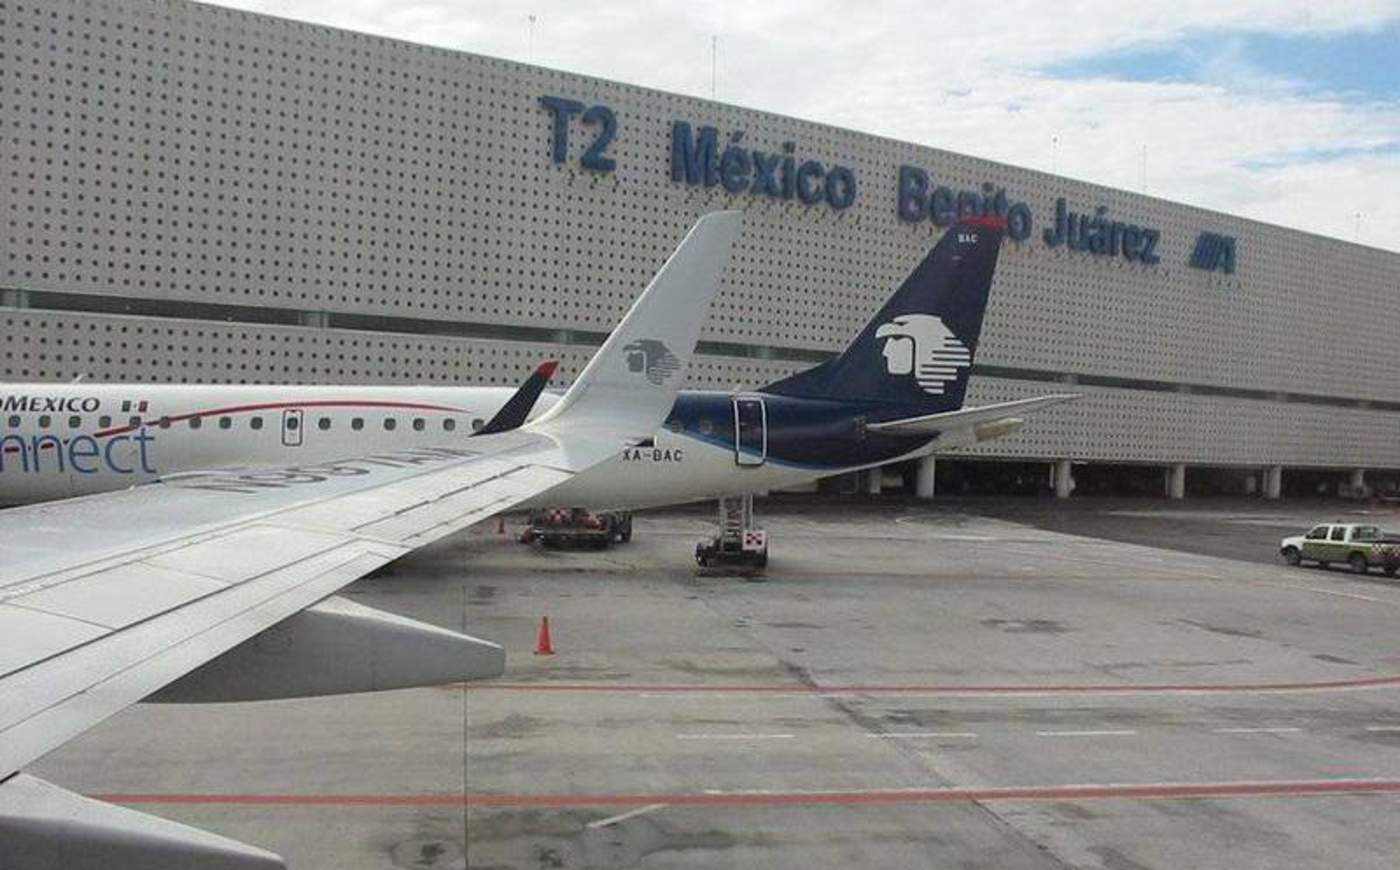  El presidente Andrés Manuel López Obrador informó que su gobierno ha puesto la lupa al personal de Migración que trabajan en los aeropuertos, pues han recibido quejas de malos tratos y extorsiones a quienes ingresan al país por esta vía. (ARCHIVO)